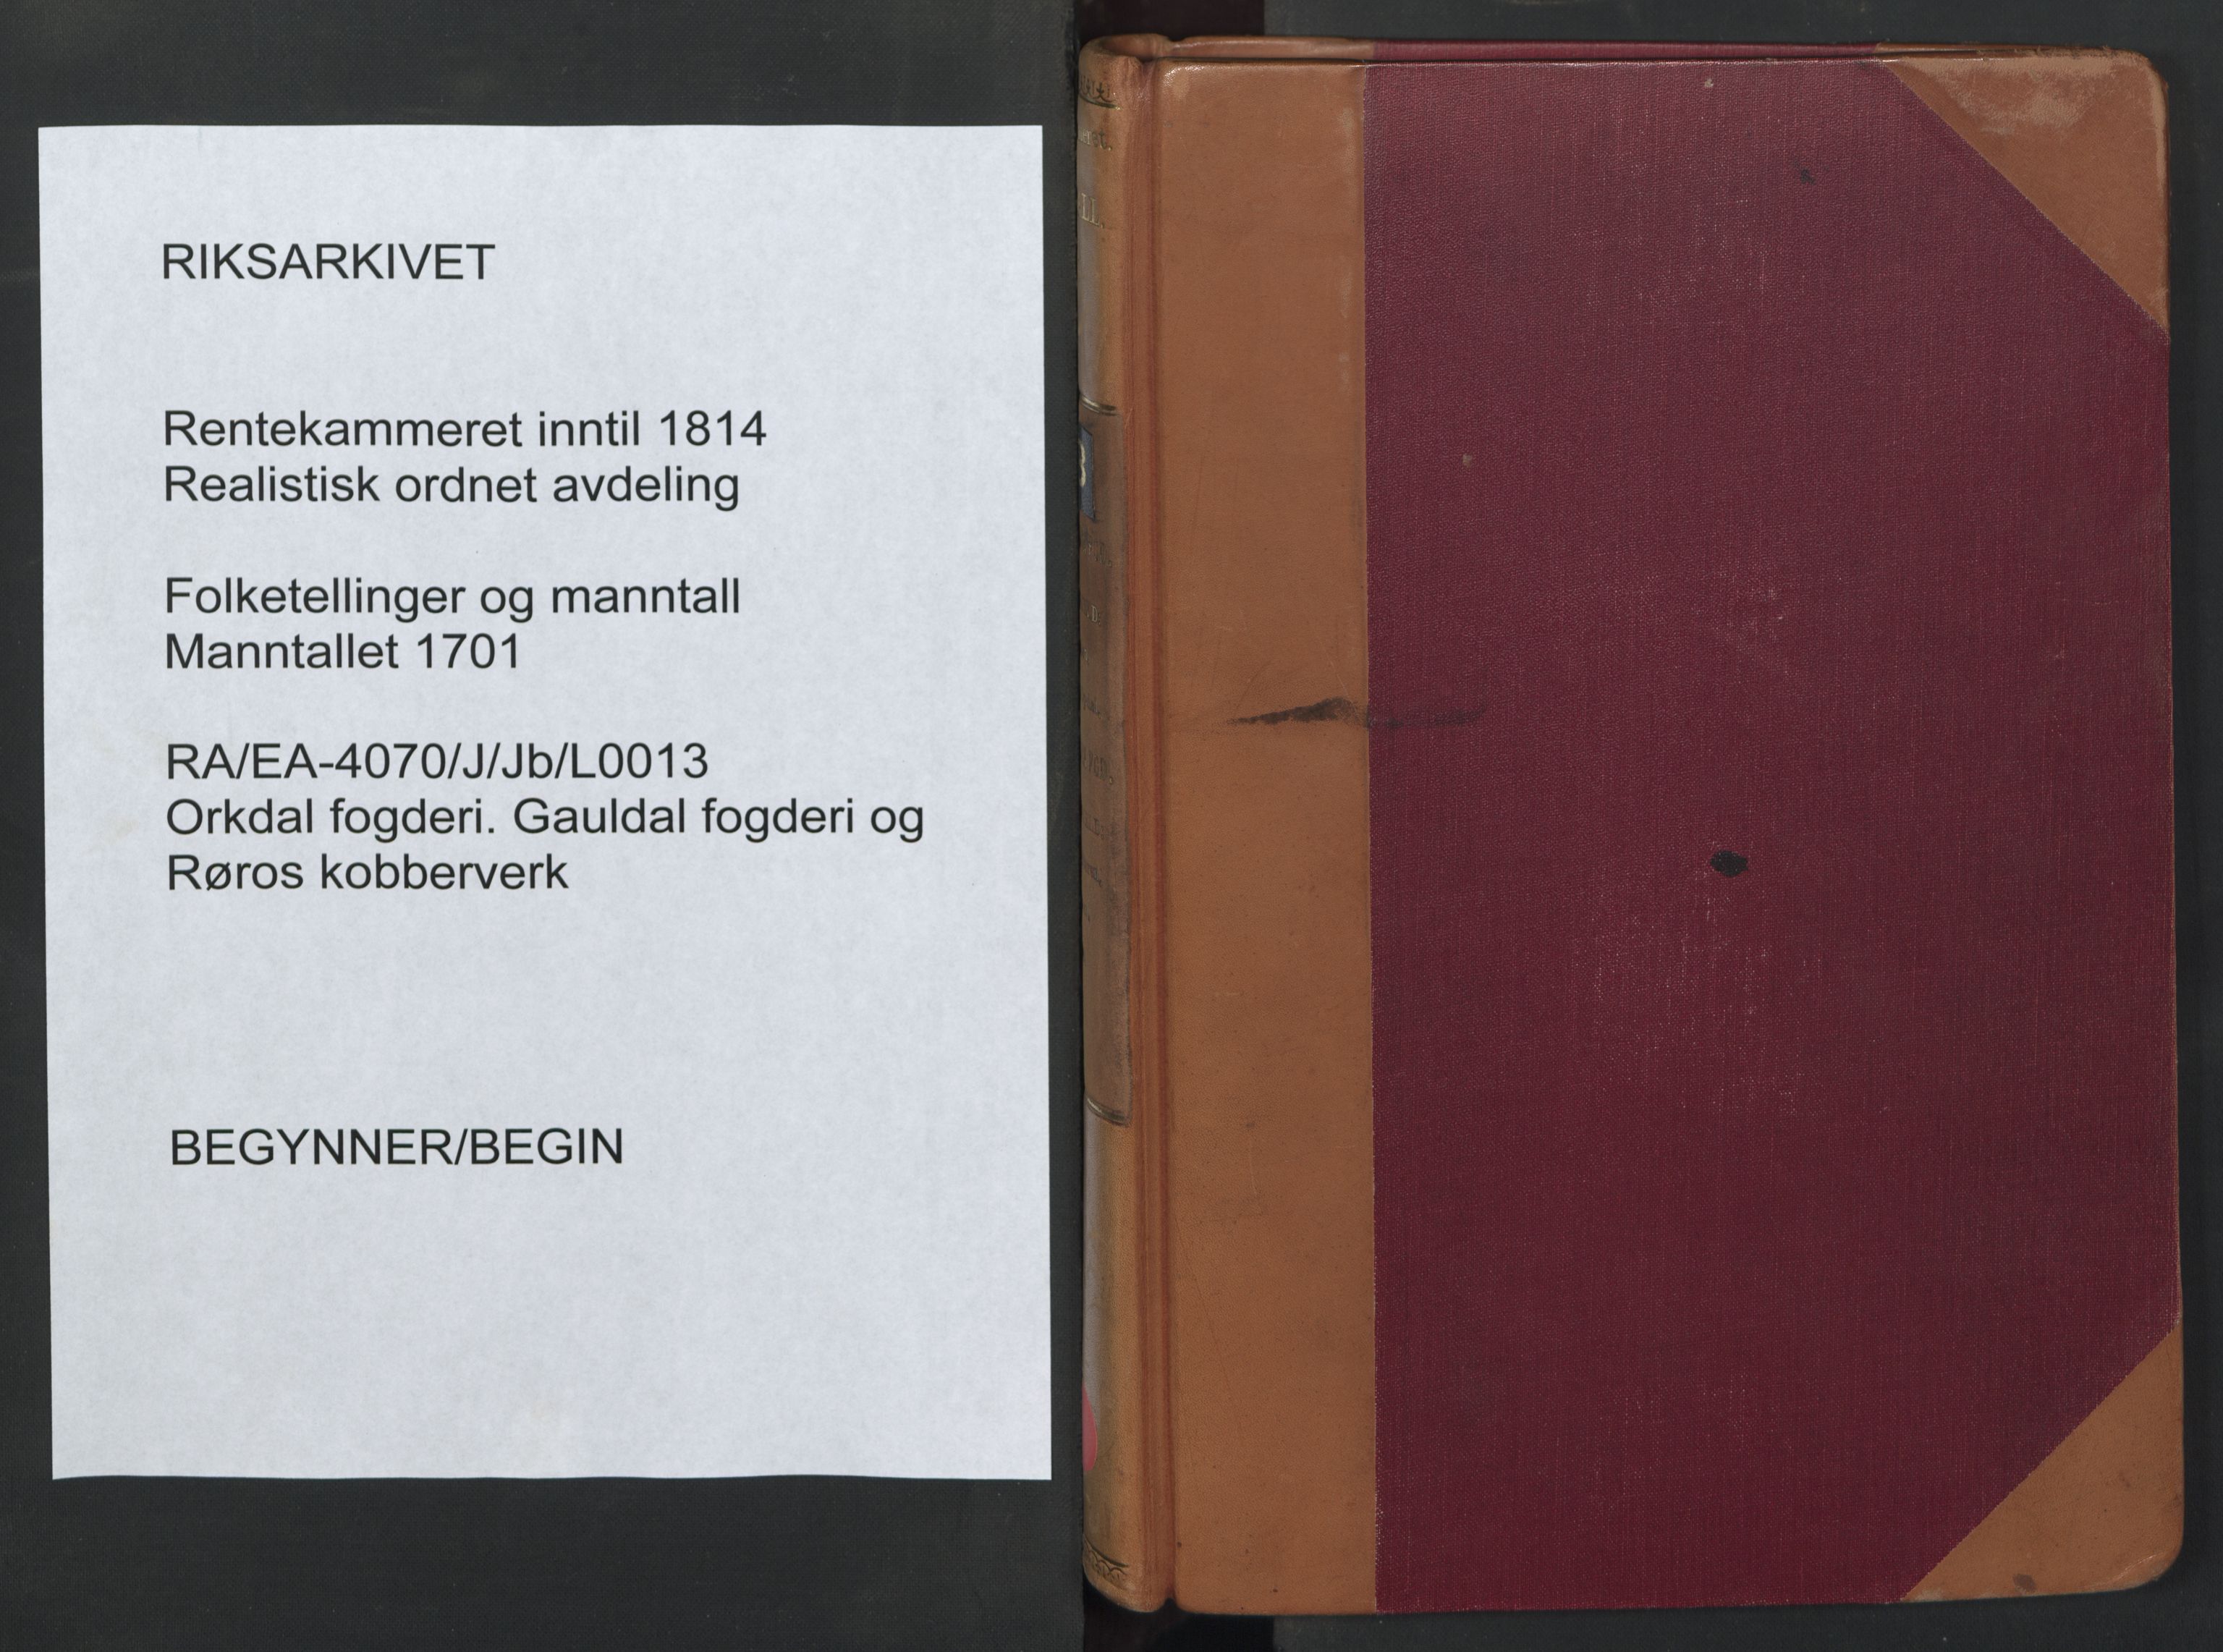 RA, Manntallet 1701, nr. 13: Orkdal fogderi og Gauldal fogderi med Røros kobberverk, 1701